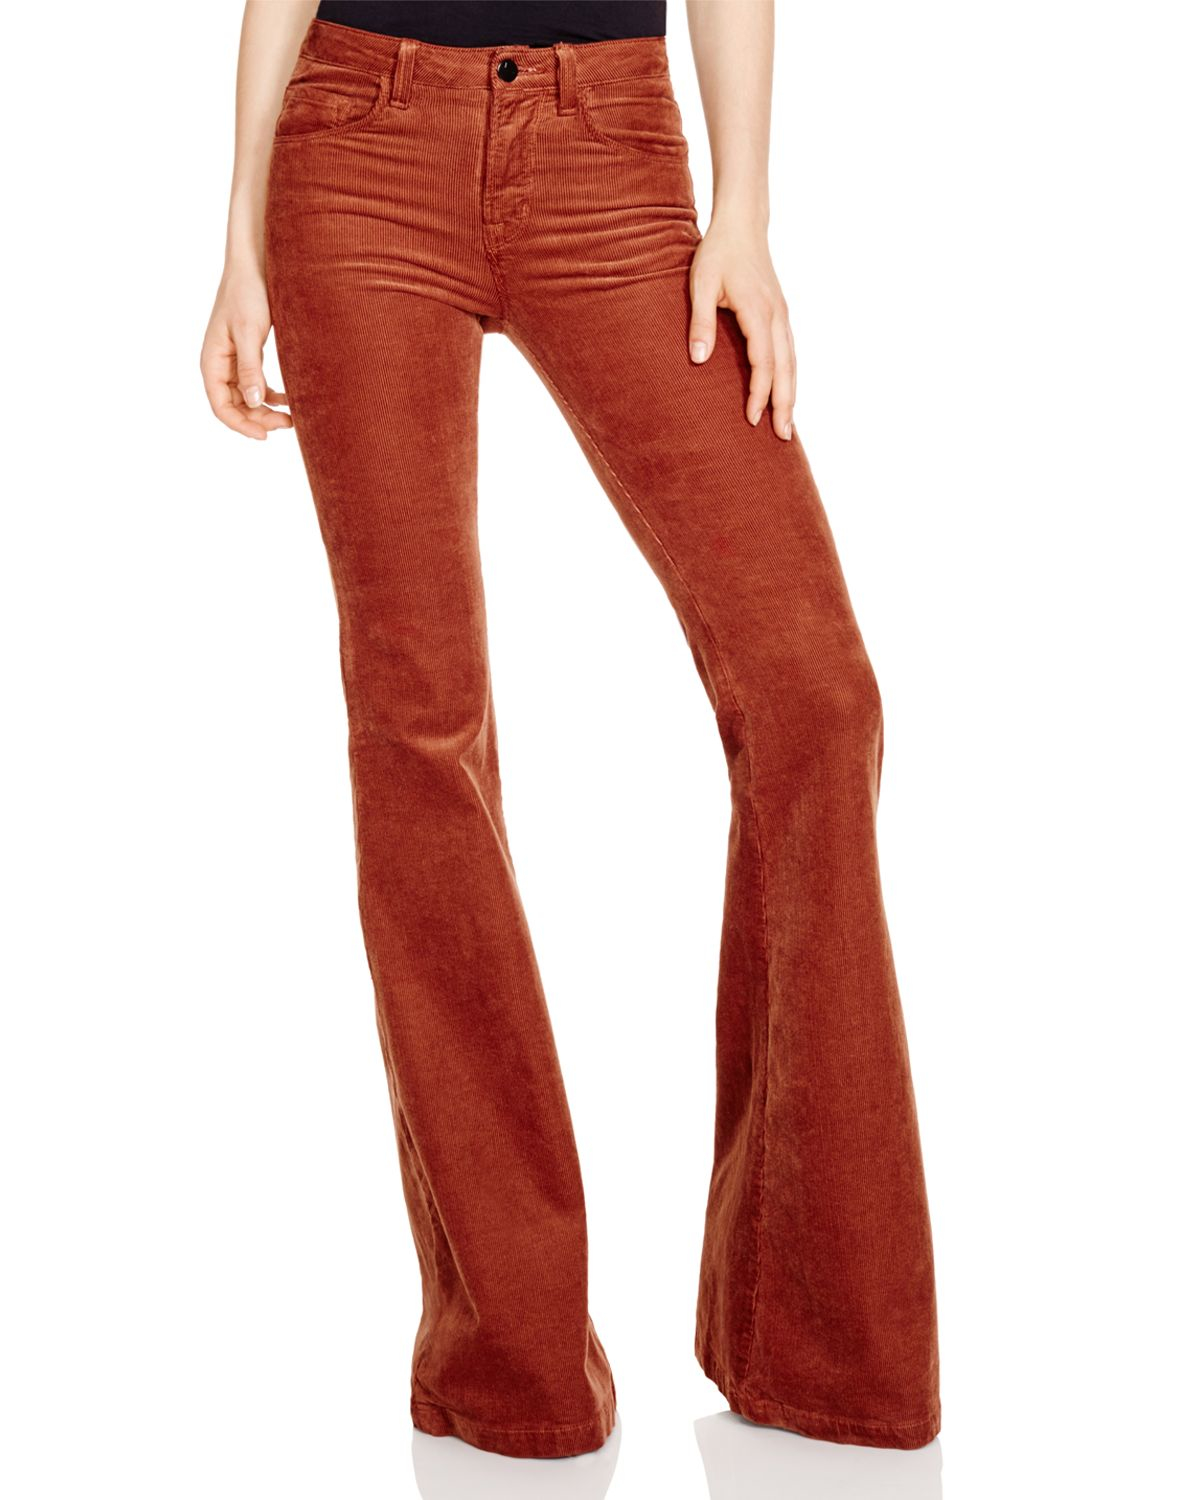 J Brand Bella Flare Corduroy Jeans - Bloomingdale's Exclusive in Orange ...